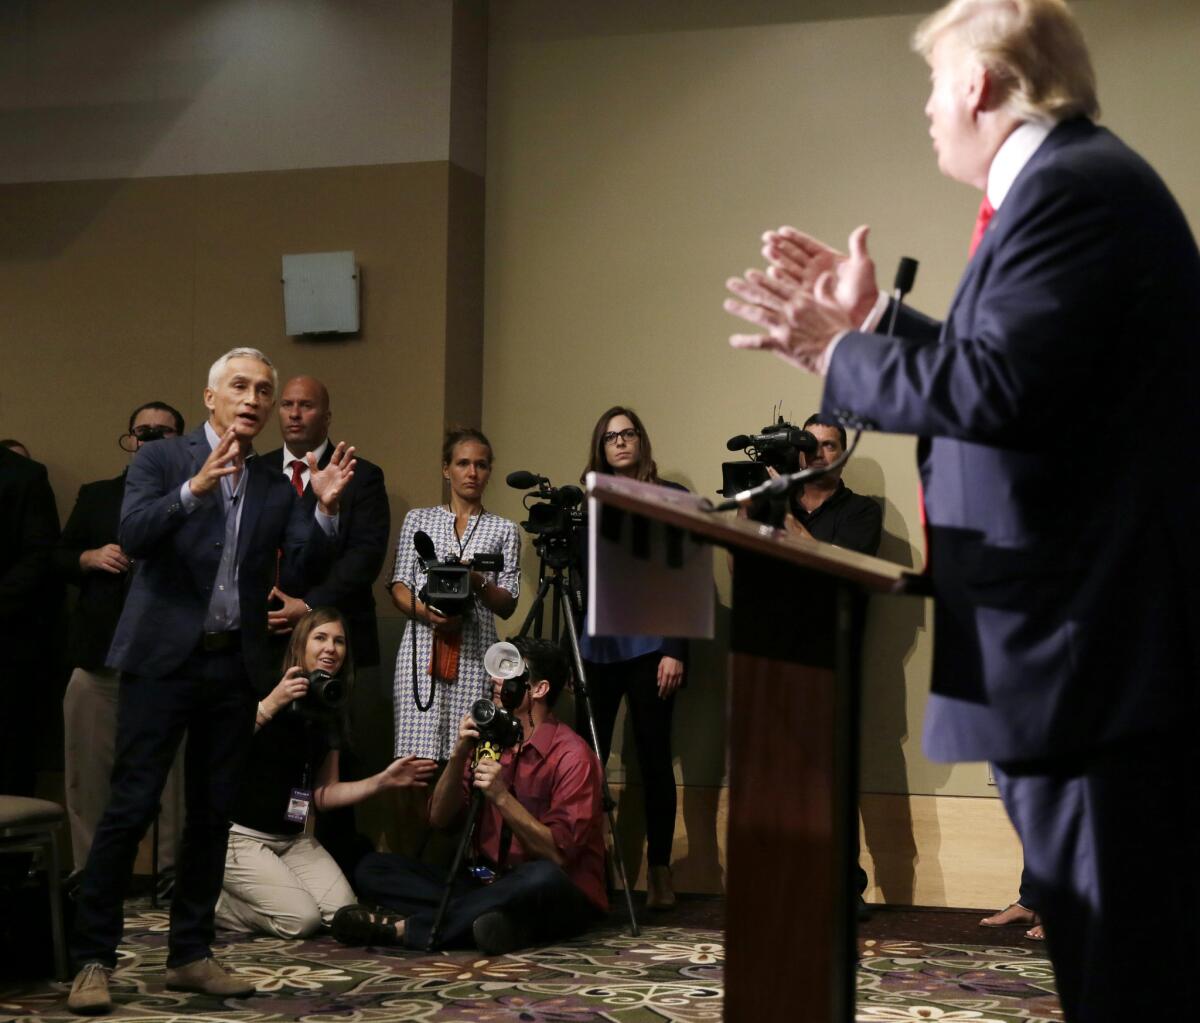 El periodista Jorge Ramos (izq.) durante la conferencia de prensa en Dubuque, Iowa, en la que Donald Trump pidió que lo retiraran de la sala. Ese fue el punto de partida del nuevo documental "Hate Rising".